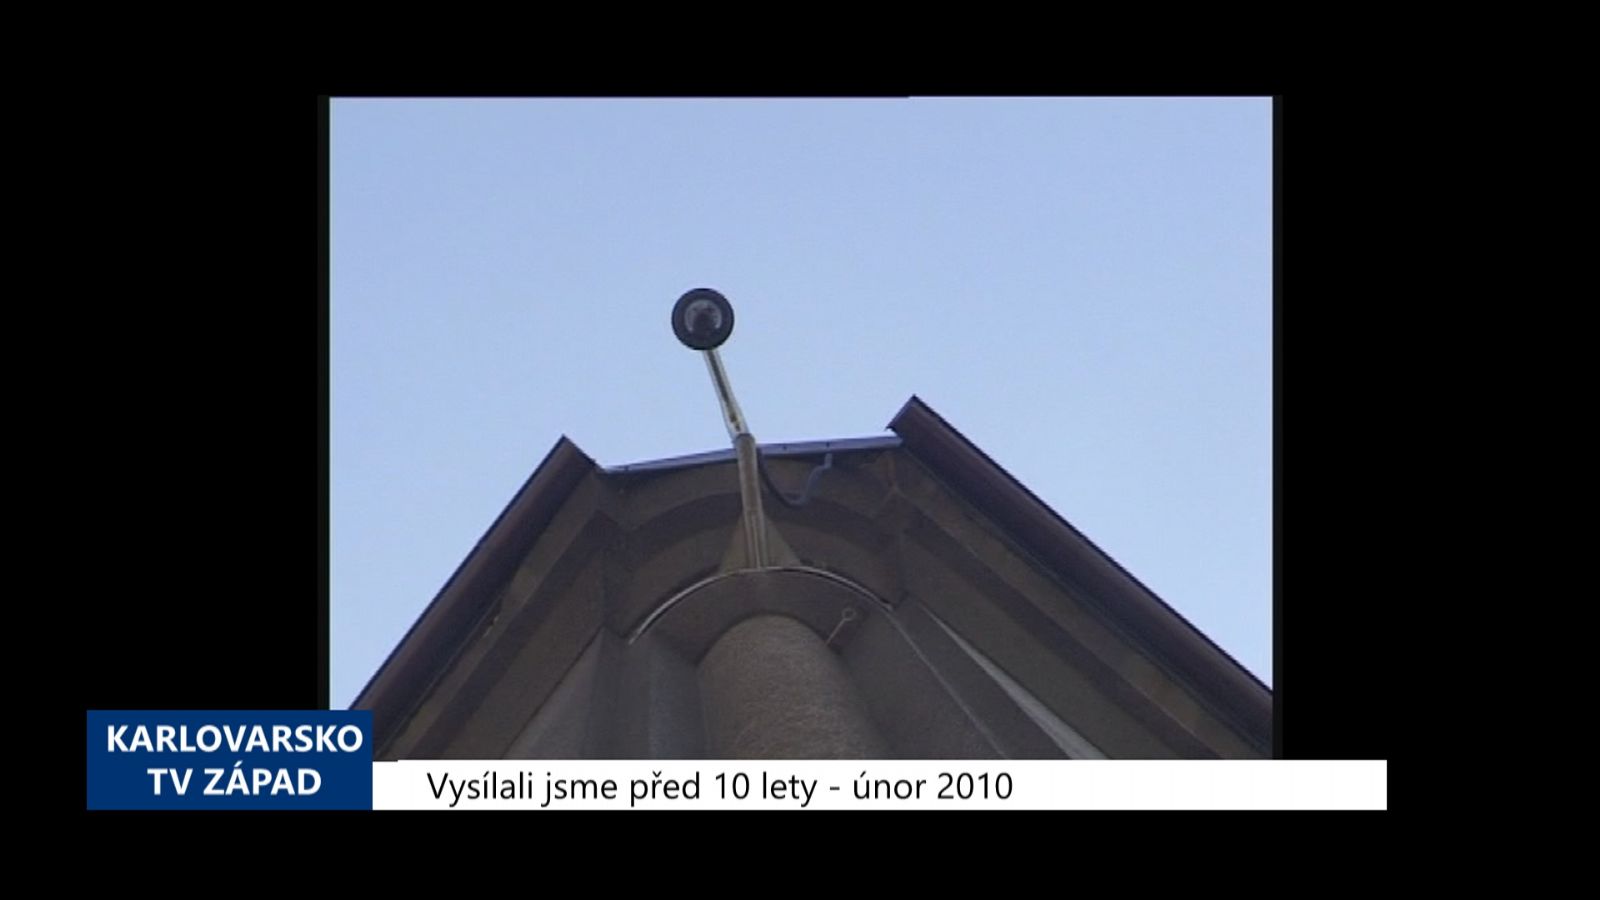 2010 – Cheb: Výběrové řízení na provozovatele kamerového systému (3974) (TV Západ)